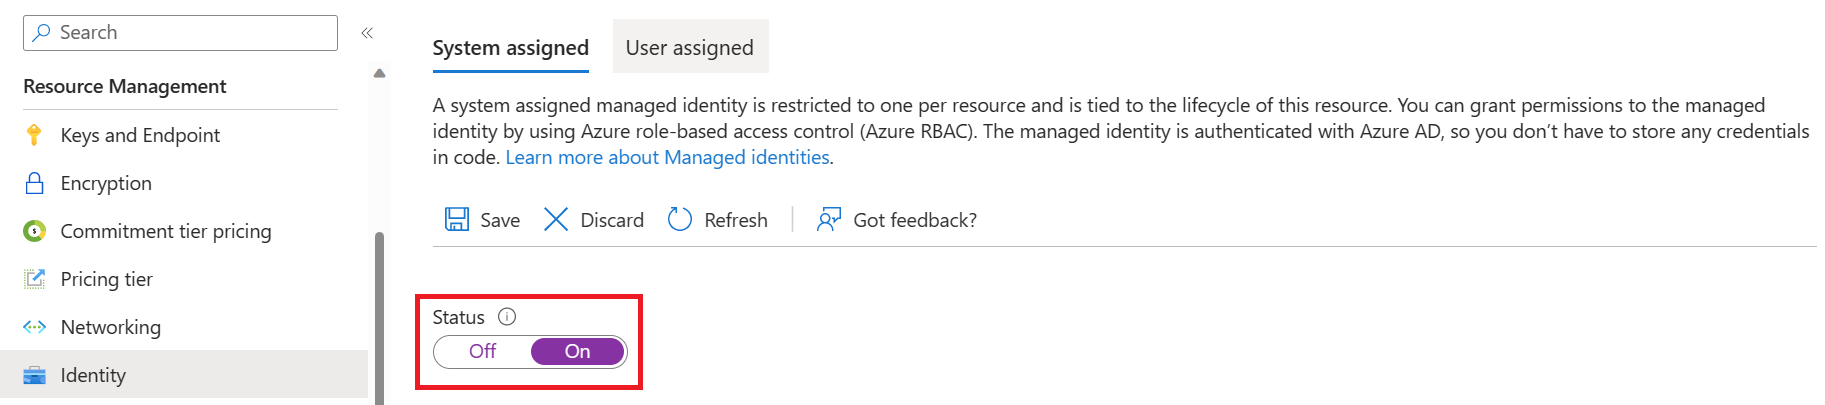 Capture d’écran : onglet identité de gestion des ressources dans le portail Azure.